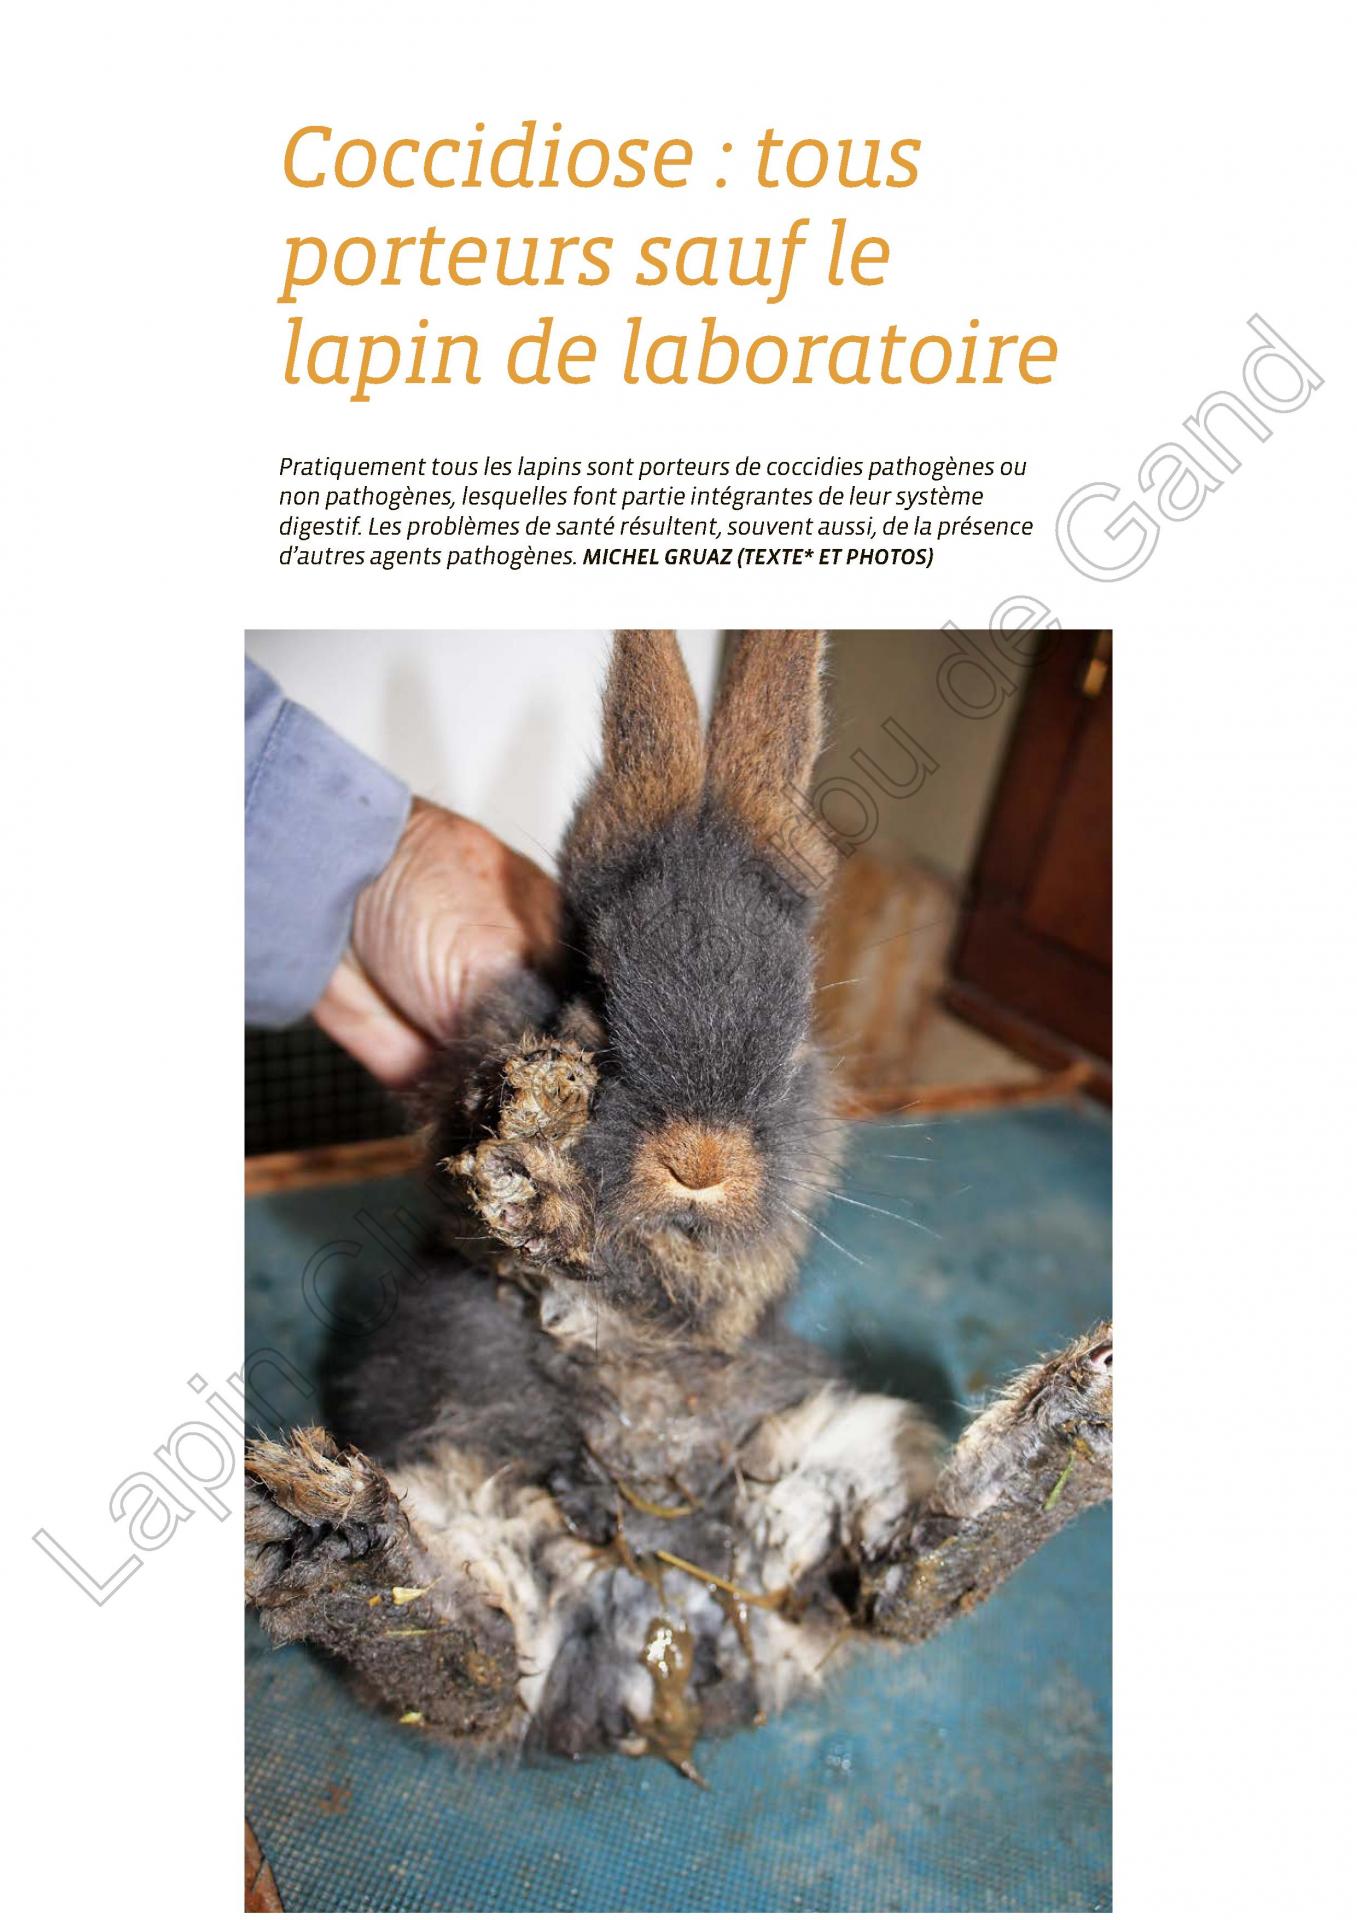 Coccidiose tous porteurs saufs le lapin de laboratoire 1